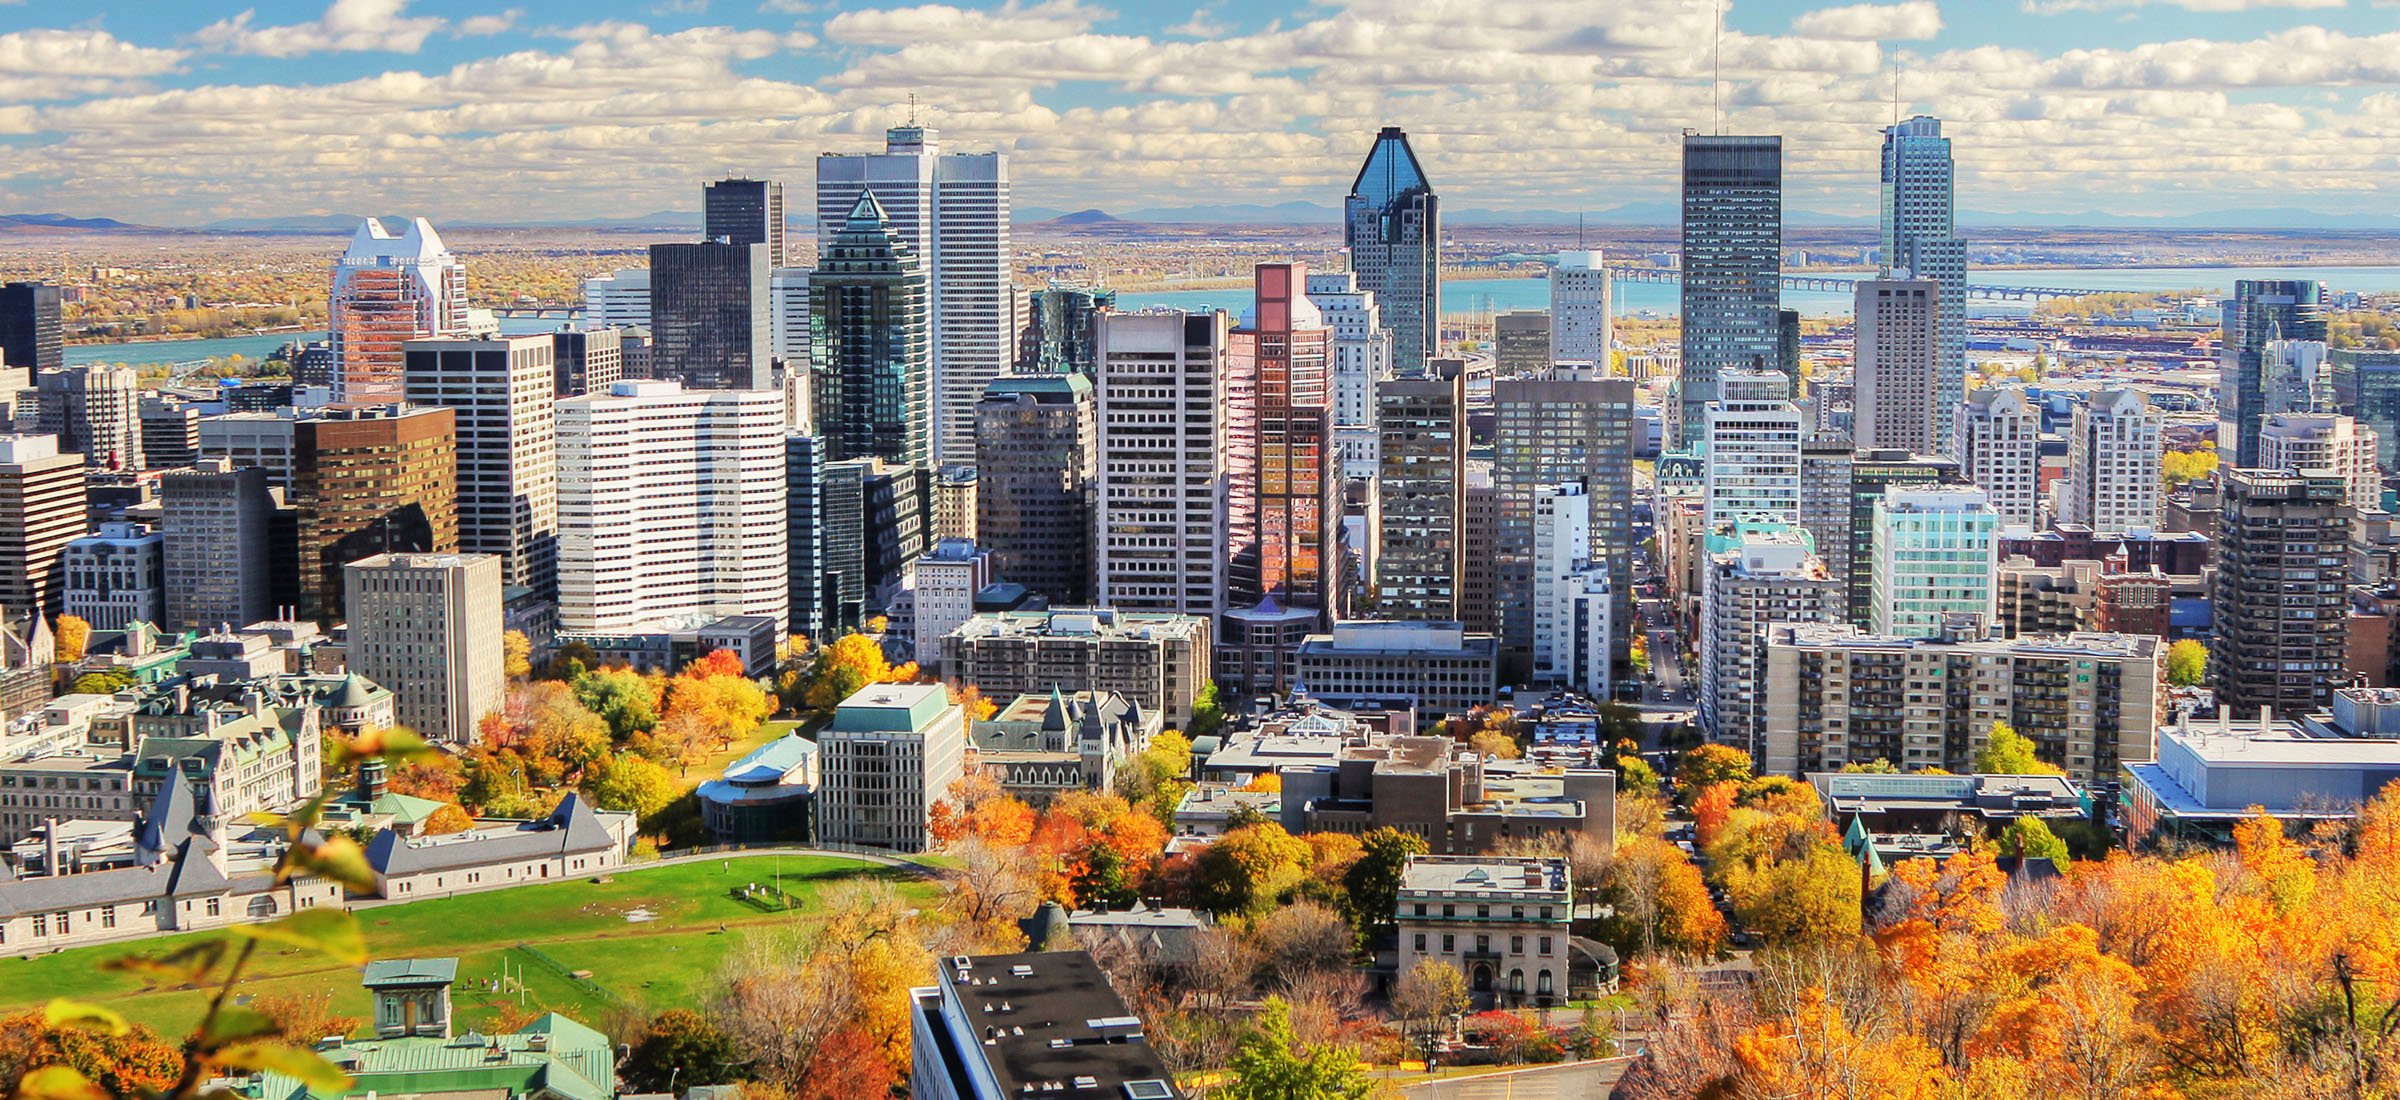 Montreal thuộc thành phố của Québec - thành phố giao giữa Bắc Mỹ và Pháp